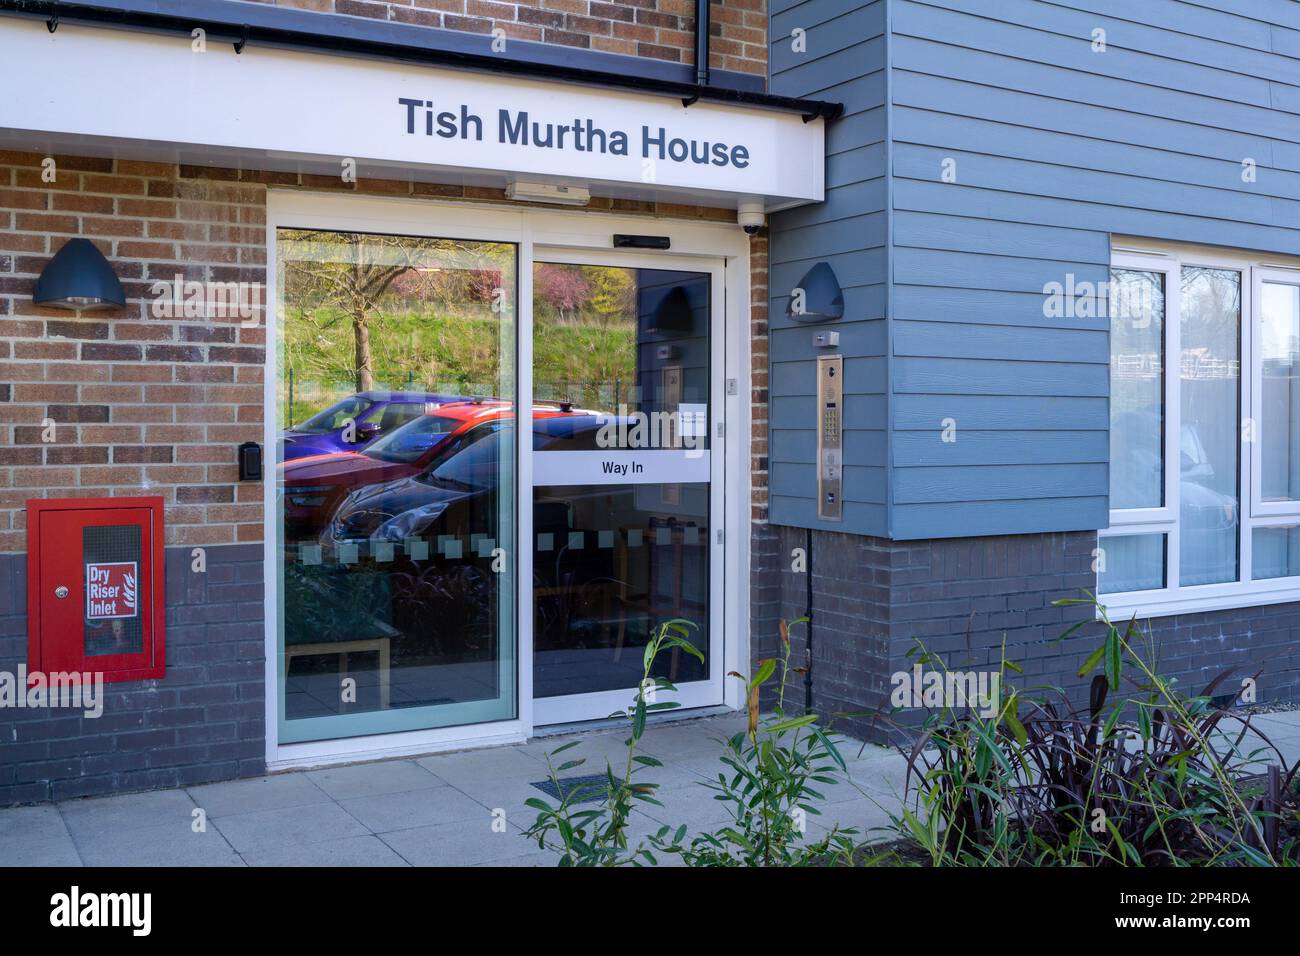 Tish Murtha House, Elswick, Newcastle upon Tyne, UK, named after British documentary photographer. Stock Photo